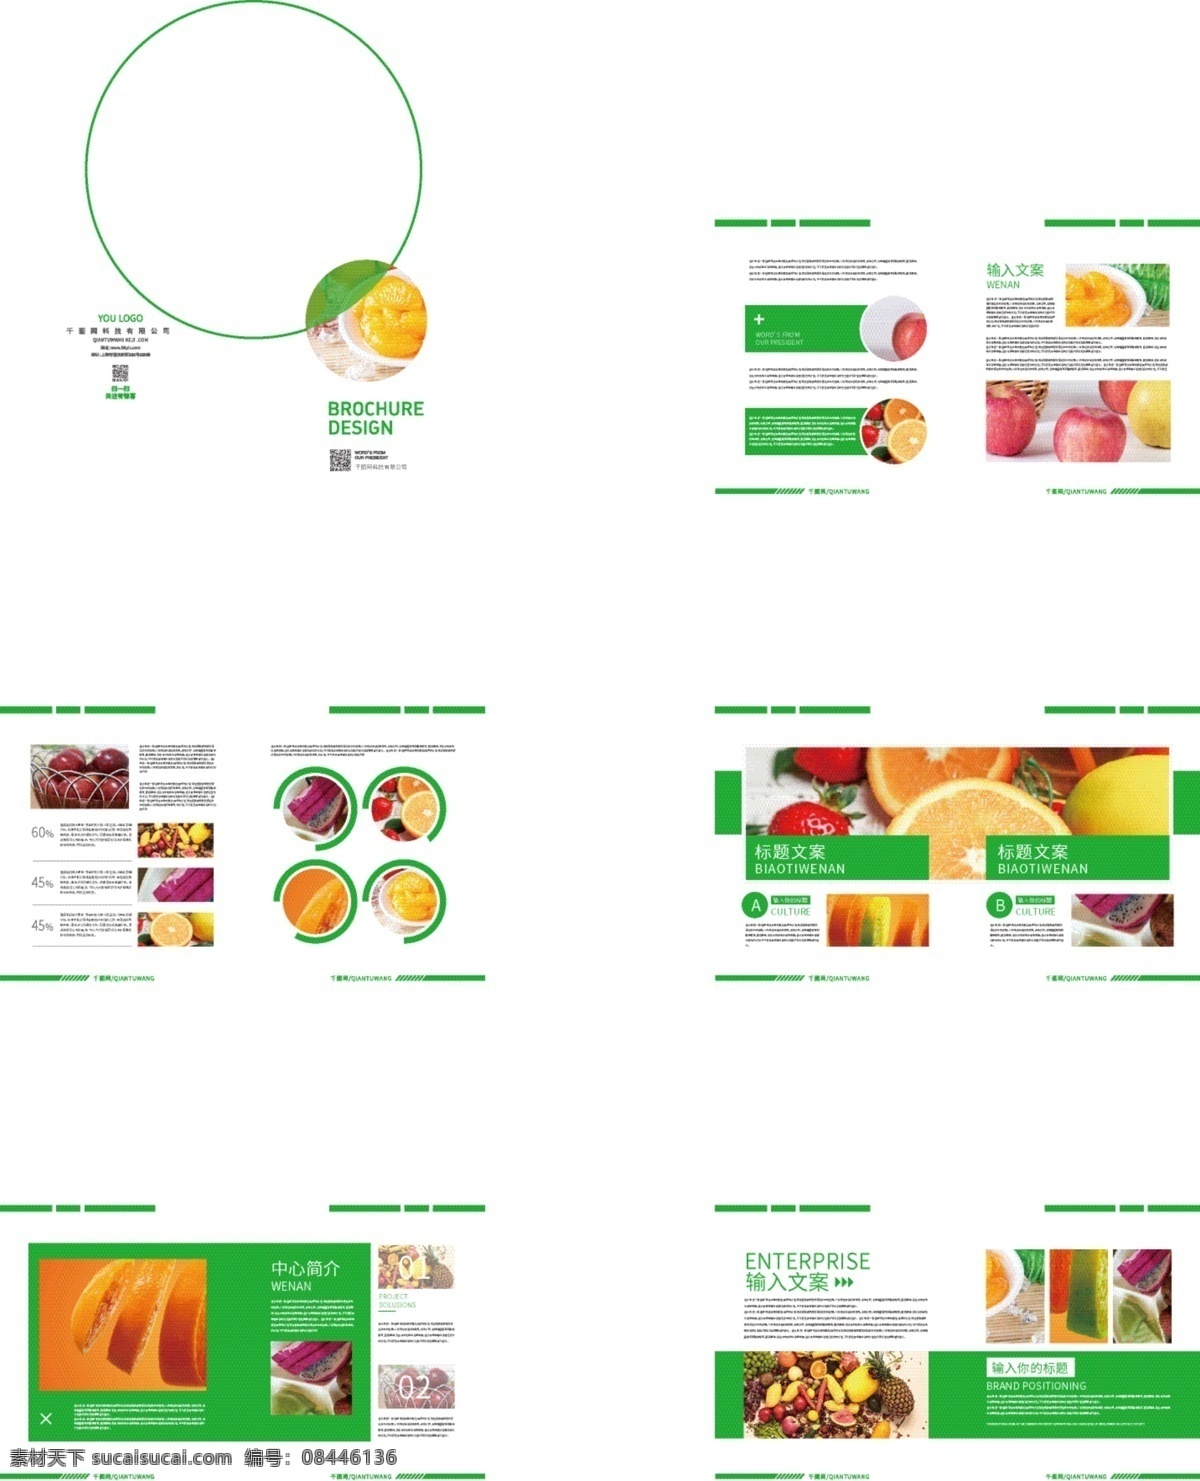 绿色 水果 画册设计 绿色画册 水果画册 食品画册 简约画册 橙子 苹果 草莓 食品 画册 画册封面 整套画册